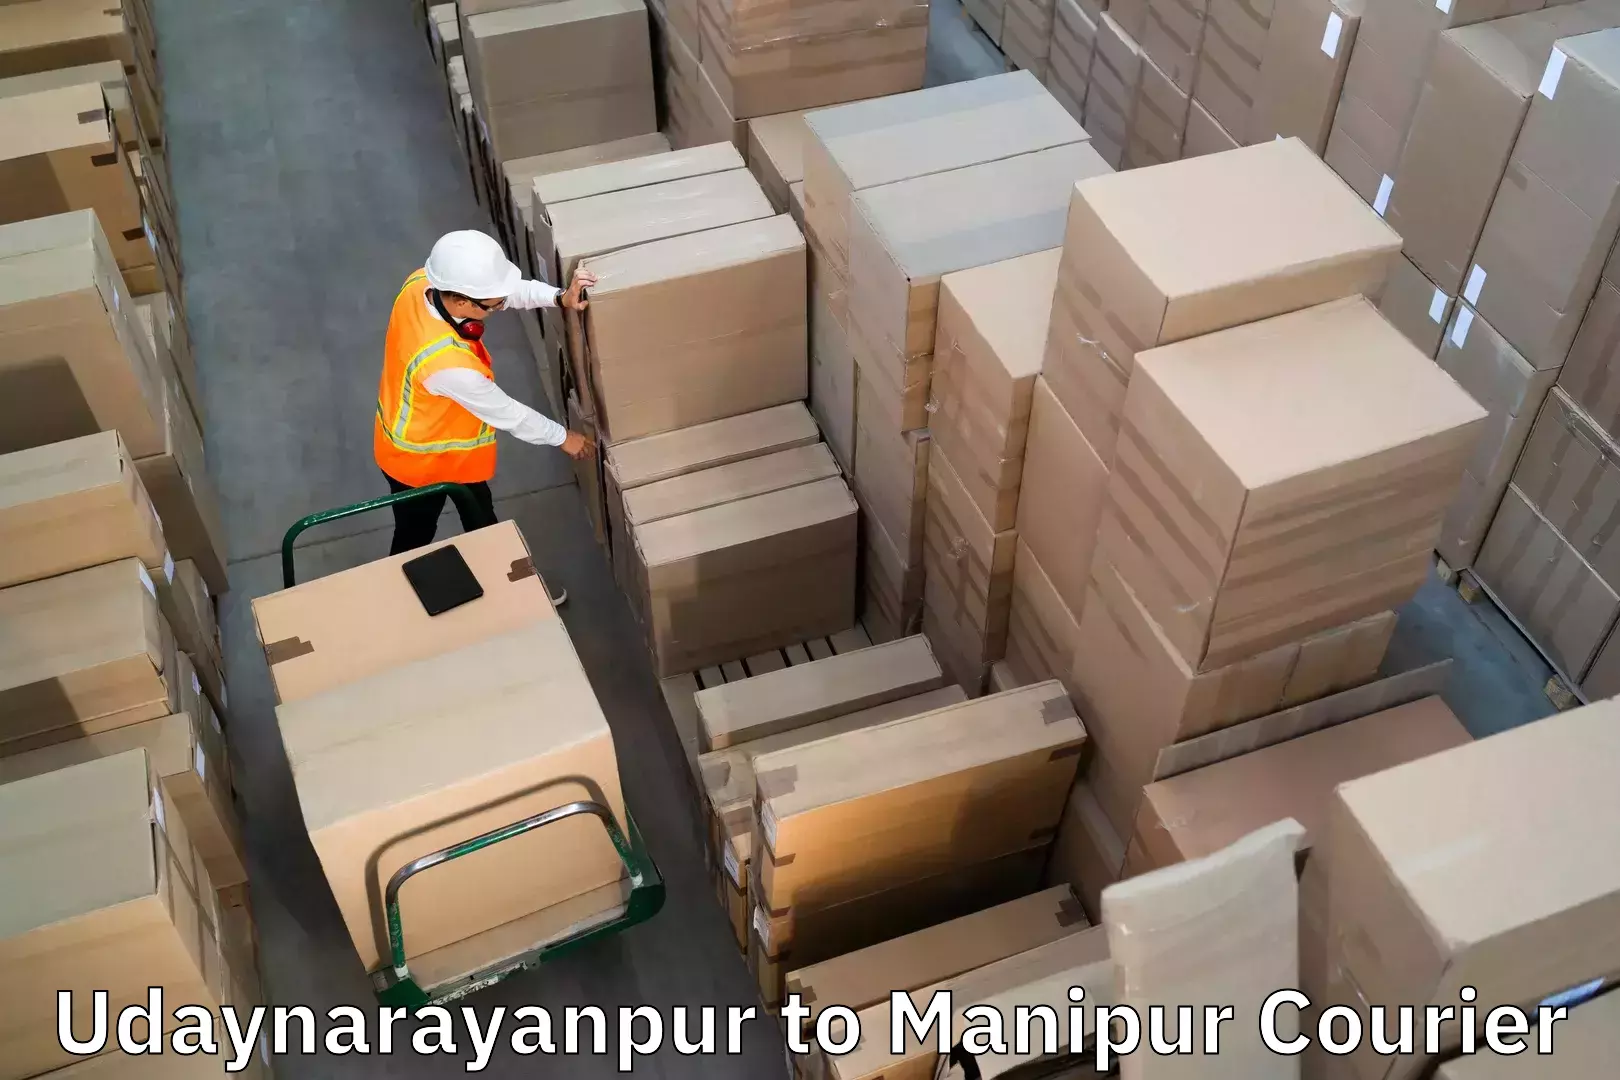 Baggage transport scheduler Udaynarayanpur to Churachandpur